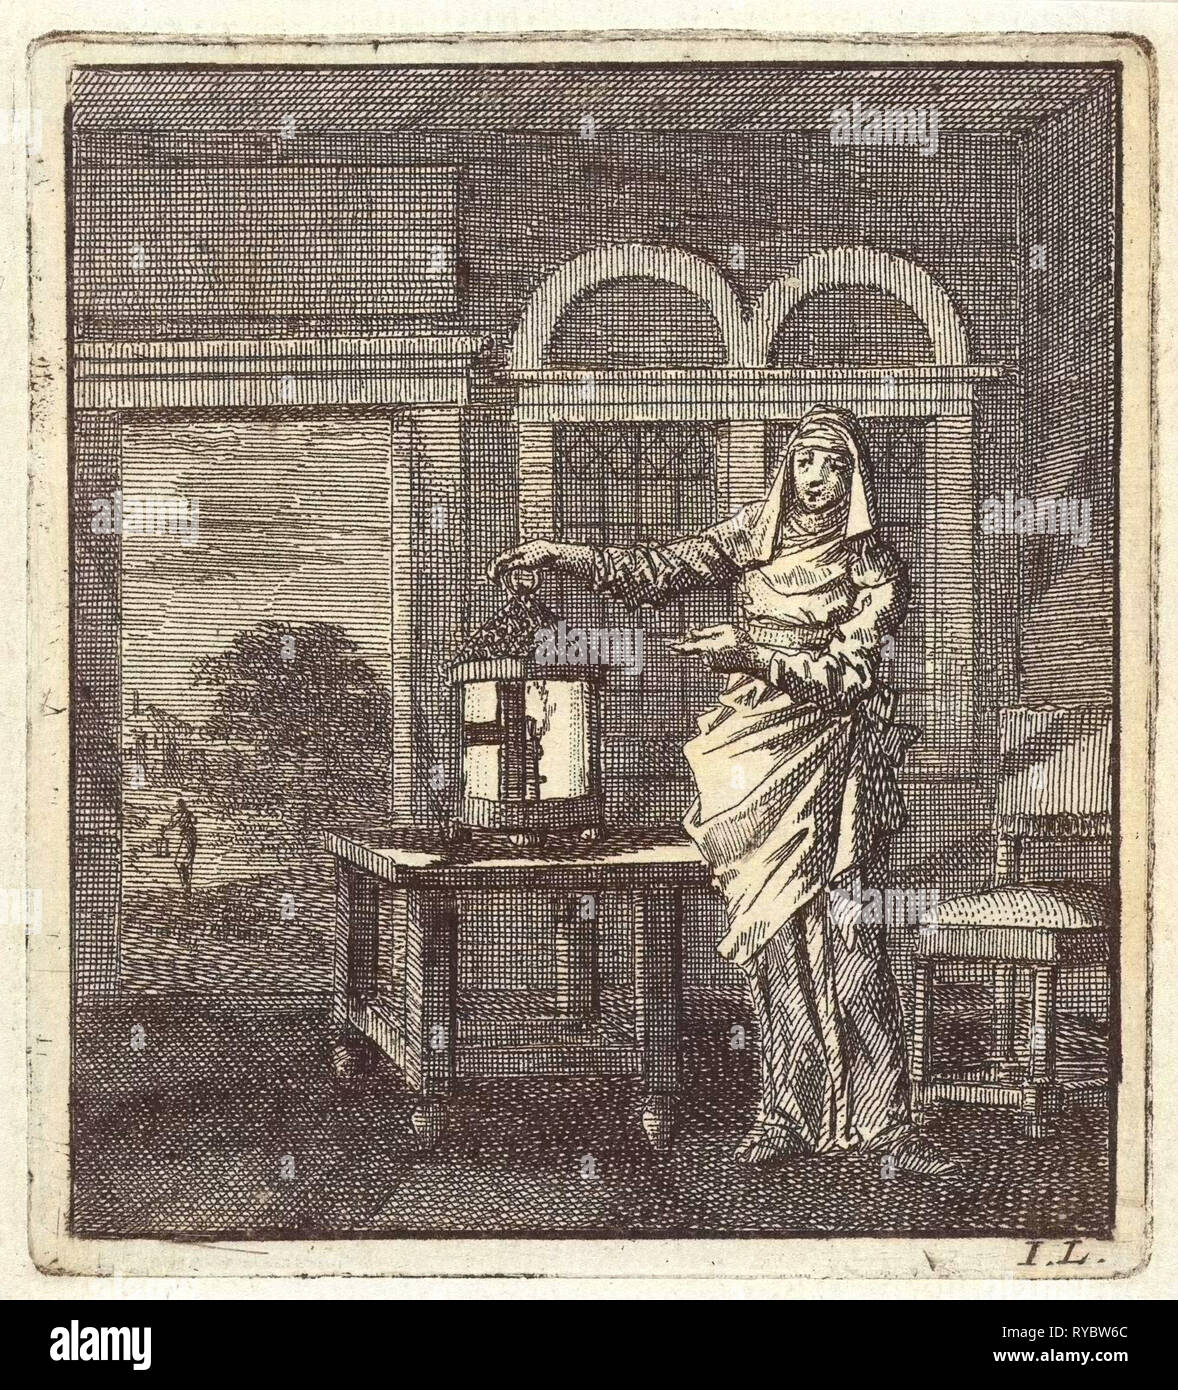 Femme met une lanterne sur une table, Jan Luyken, mer. Arentsz & Pieter Cornelis van der Sys (II), 1711 Banque D'Images